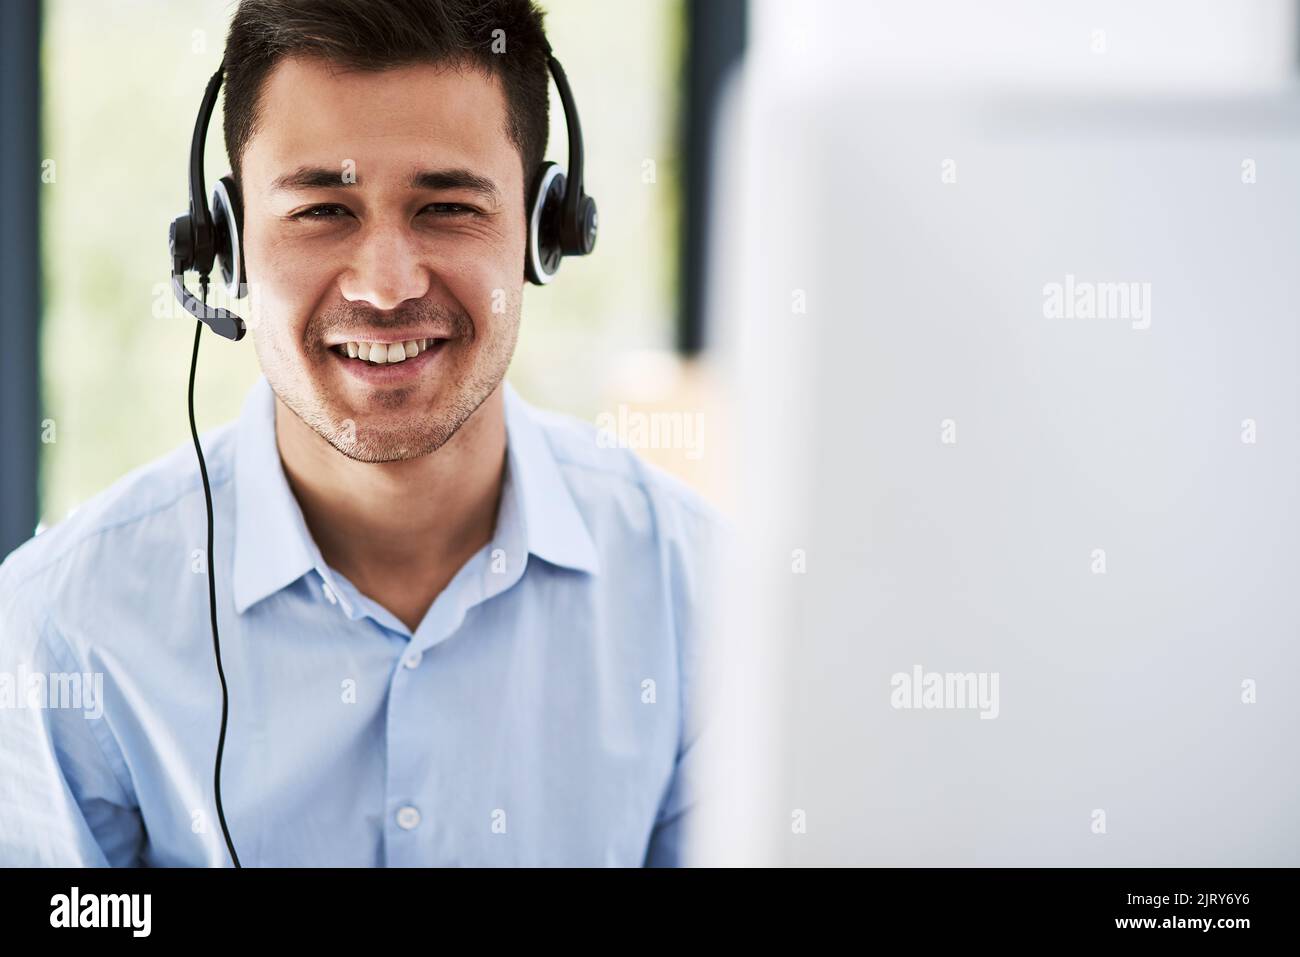 Kundenservice ist meine Priorität. Porträt eines glücklichen jungen Mannes, der ein Headset trägt und bei der Arbeit einen Computer benutzt. Stockfoto